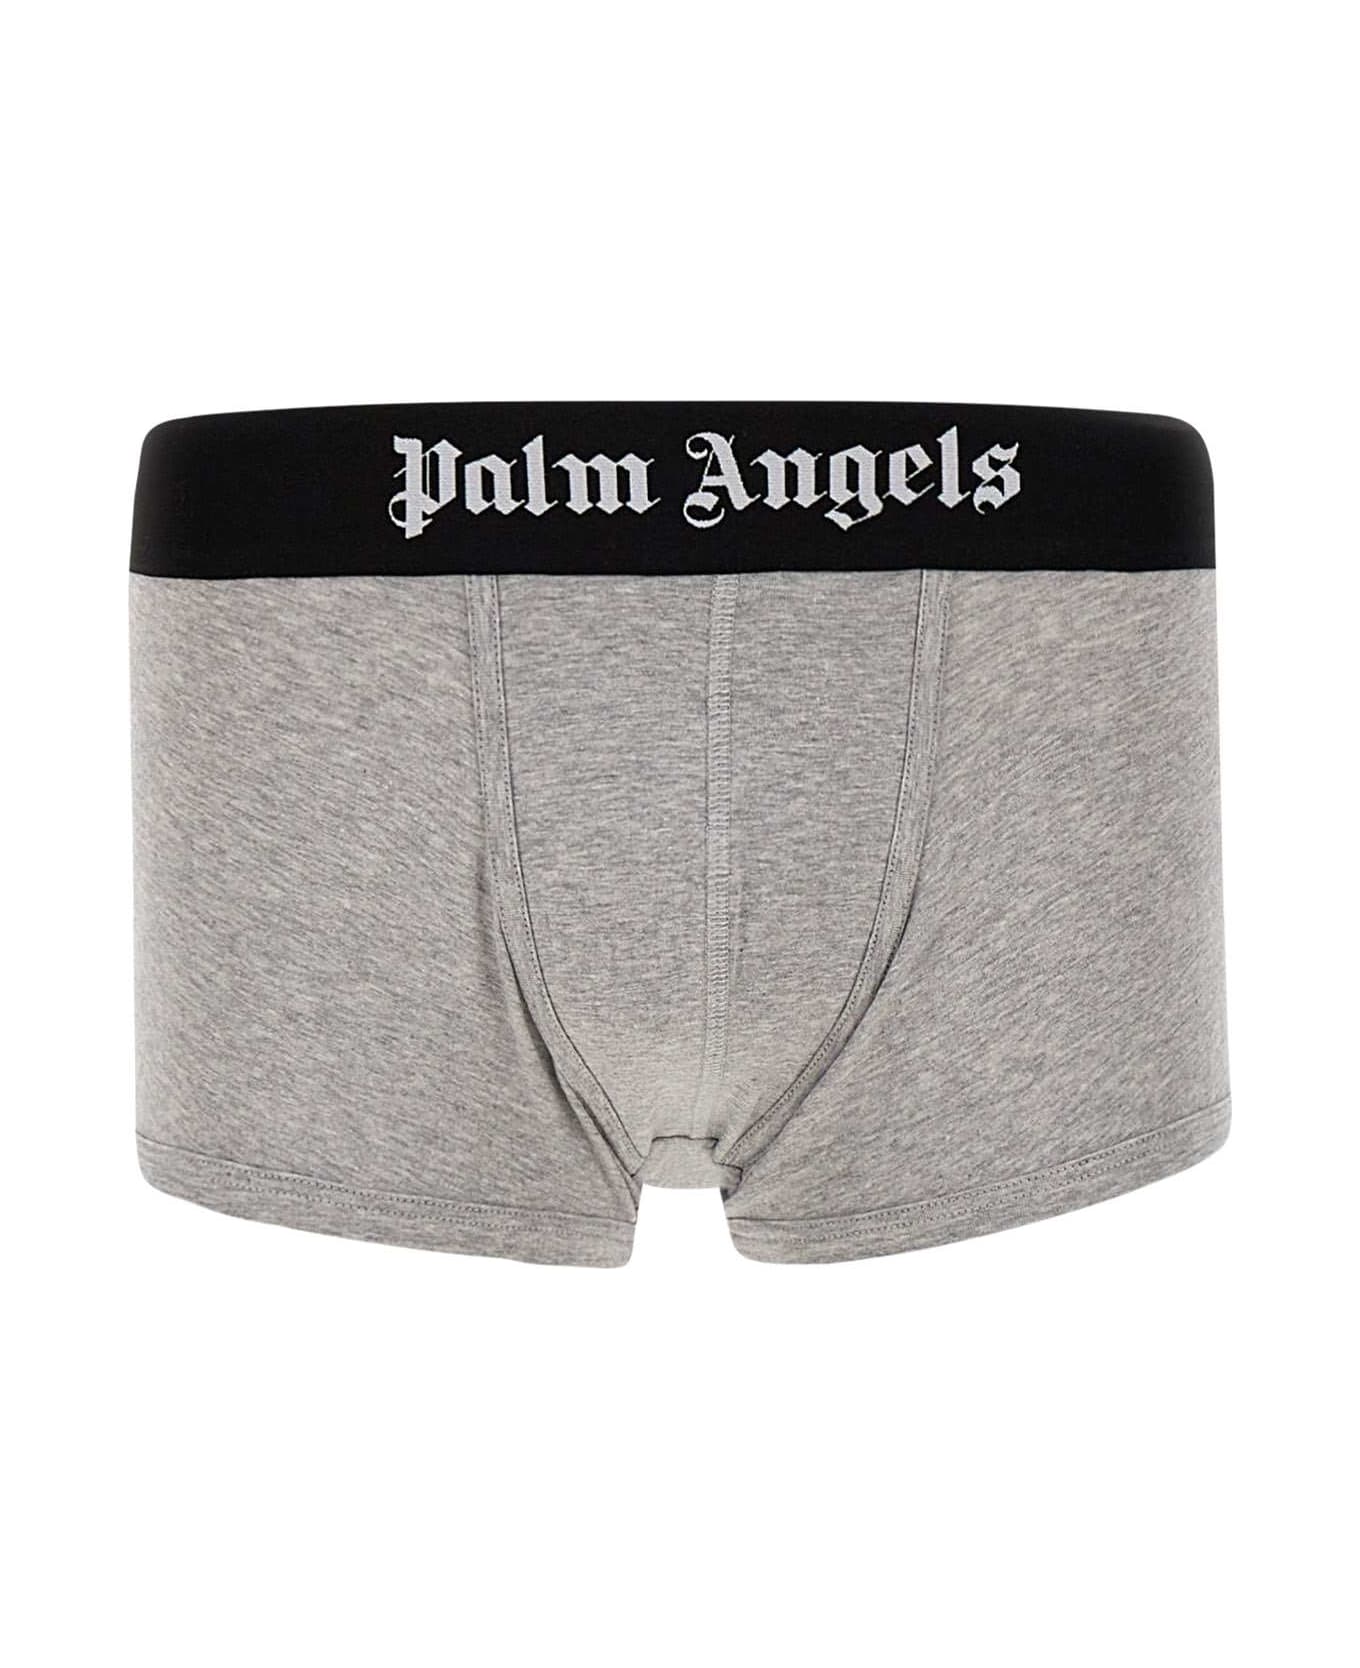 Palm Angels 'trunk' Cotton Boxer Shorts - Multicolor